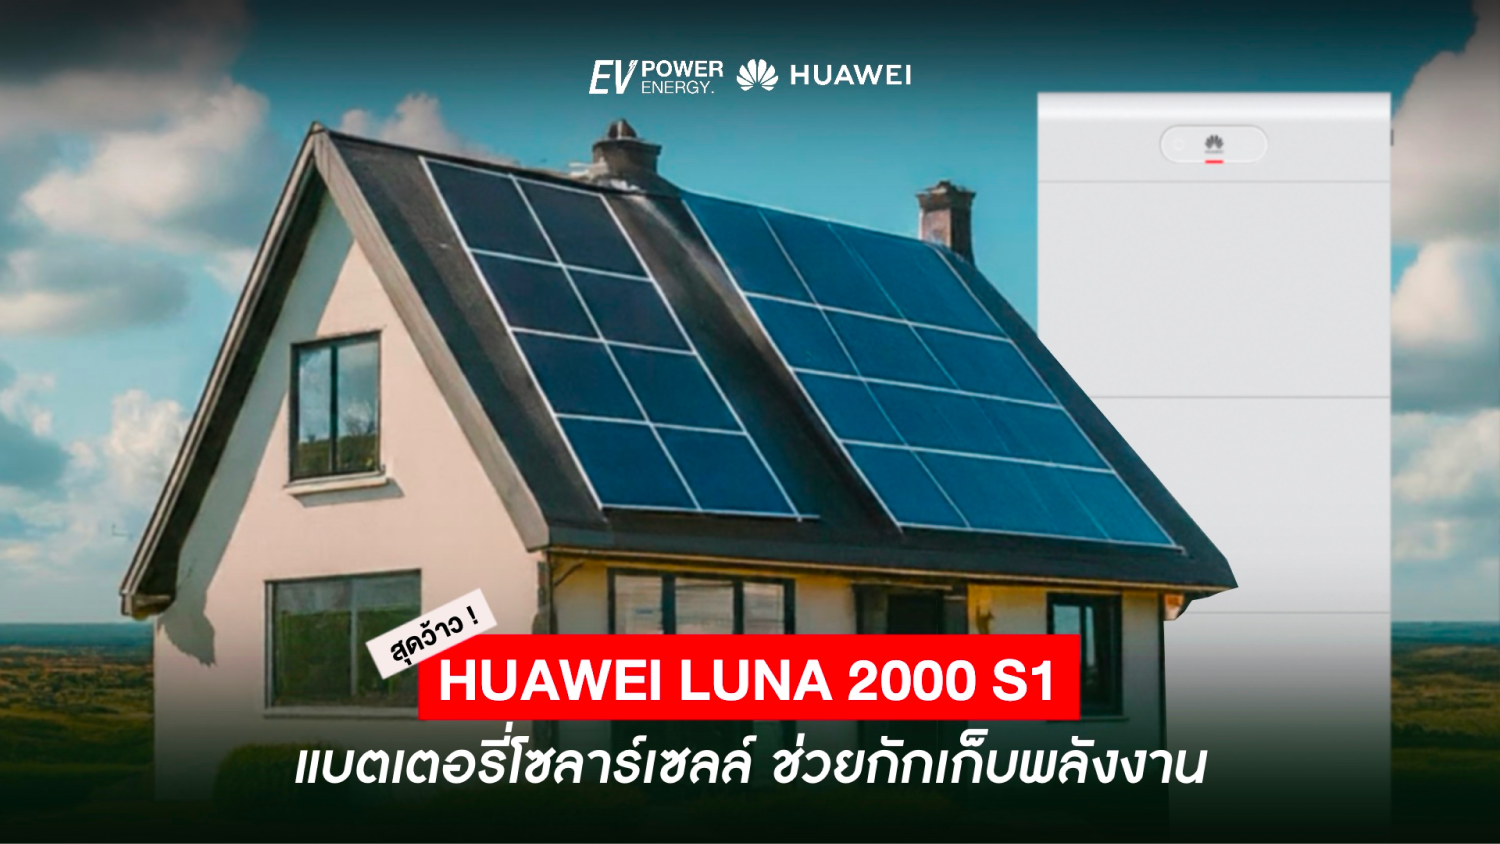 Huawei LUNA 2000 S1 ตัวช่วยกักเก็บพลังงาน